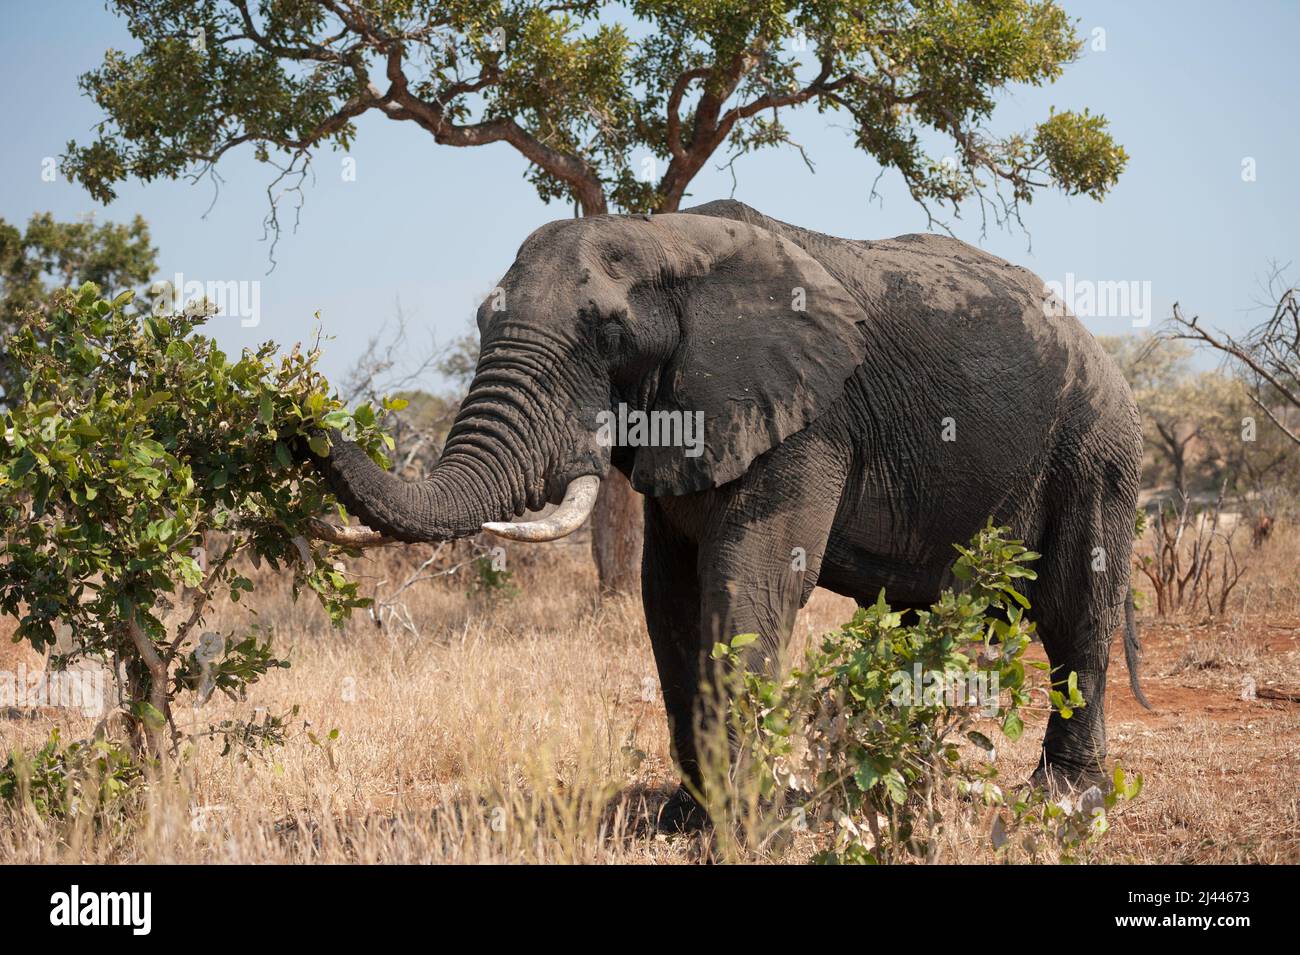 Großer afrikanischer Elefant mit Stoßzähnen, nass vom Schwimmen im Fluss, mit Futter. Krüger National Park, Südafrika Stockfoto